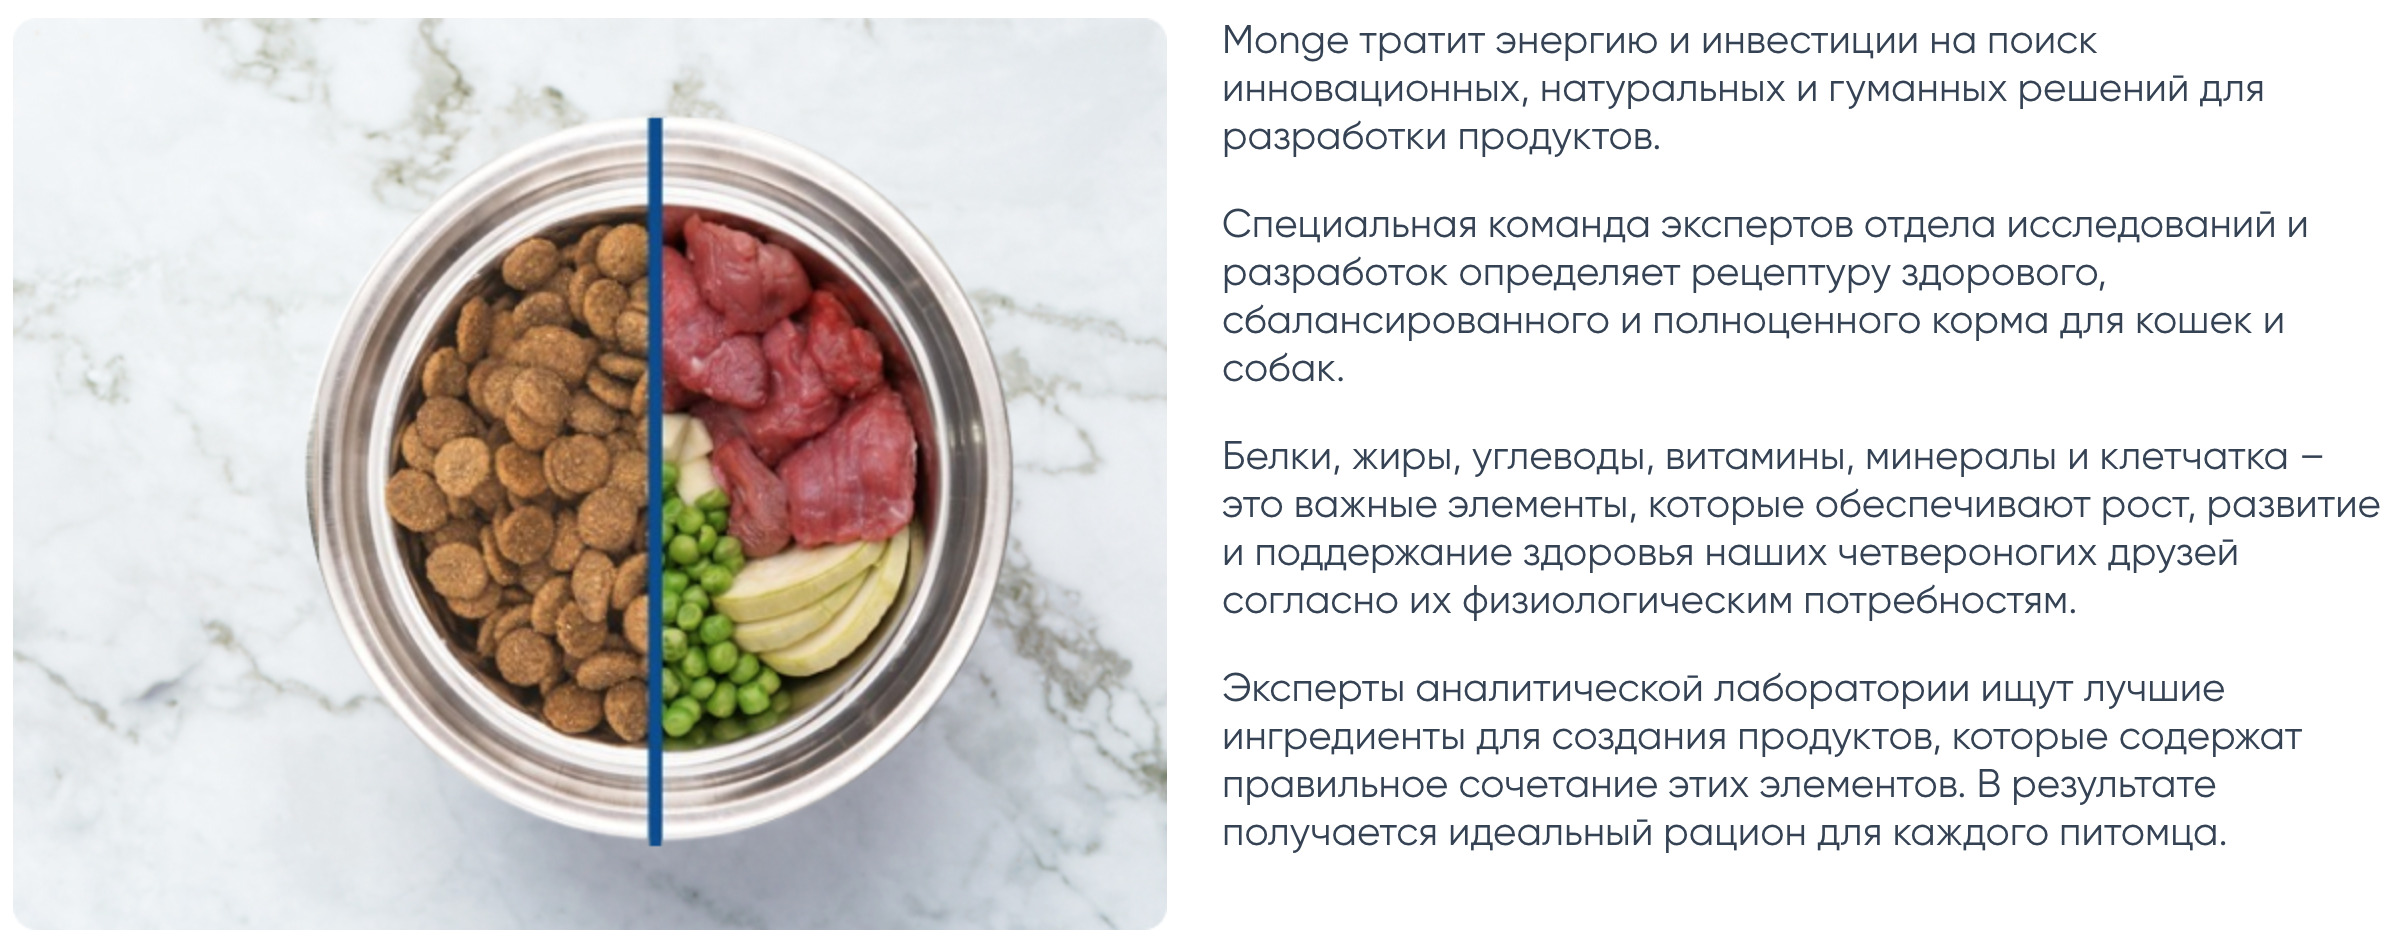 Сухие корма для собак Mongе (Монж) в Калининграде